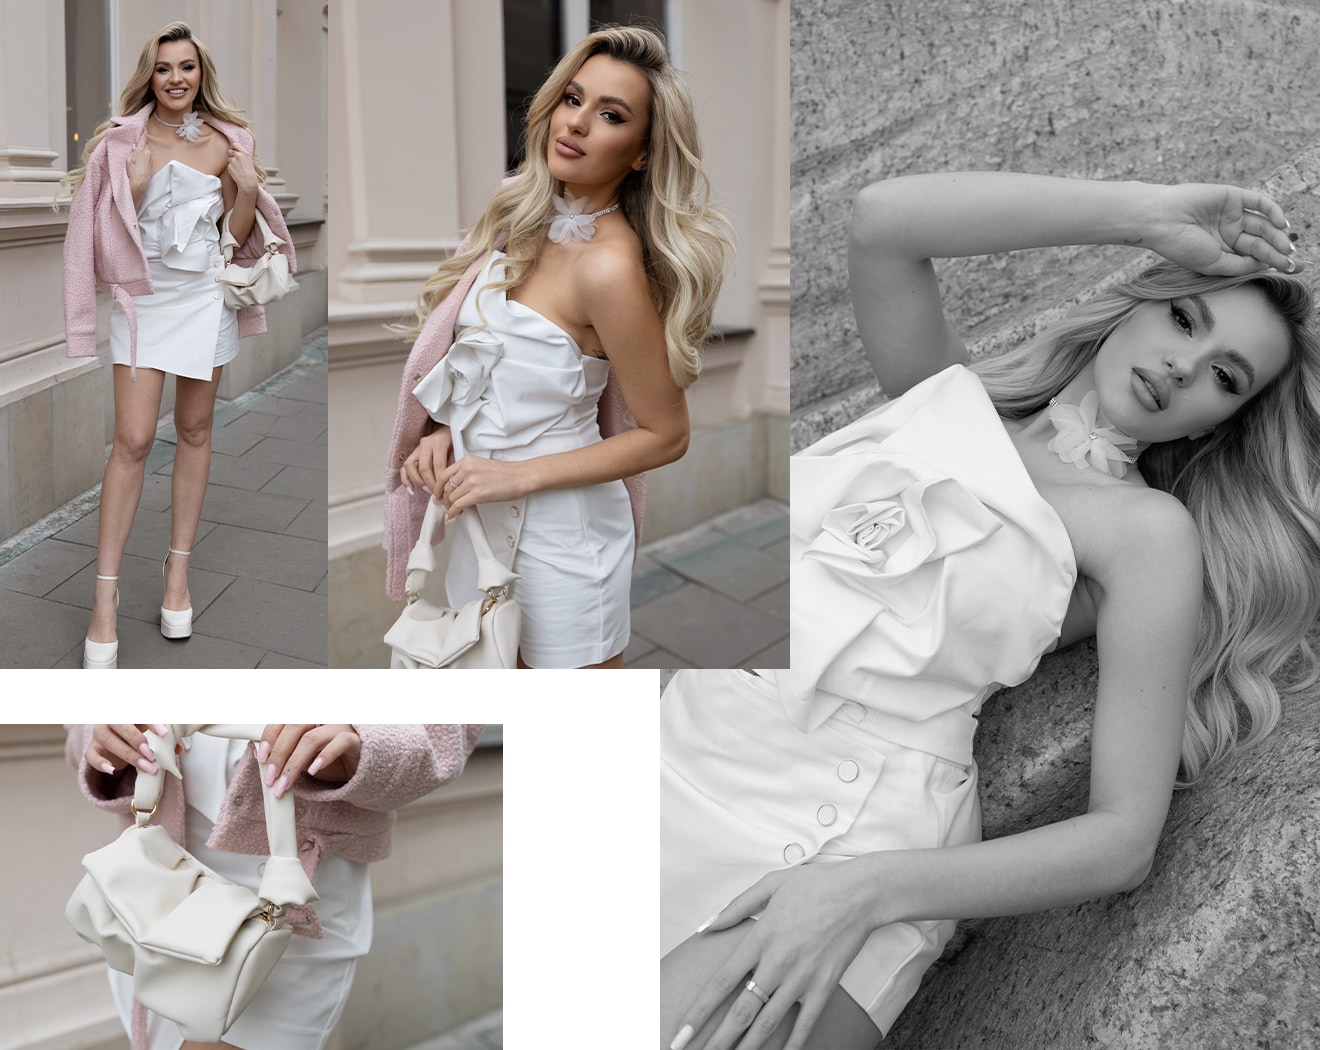 szukasz propozycji na eleganckie stylizacje w nowoczesnym wydaniu? postaw na top z ozdobną różą, białe spódnico-spodenki oraz różową ramoneskę - stwórz dziewczęcy look